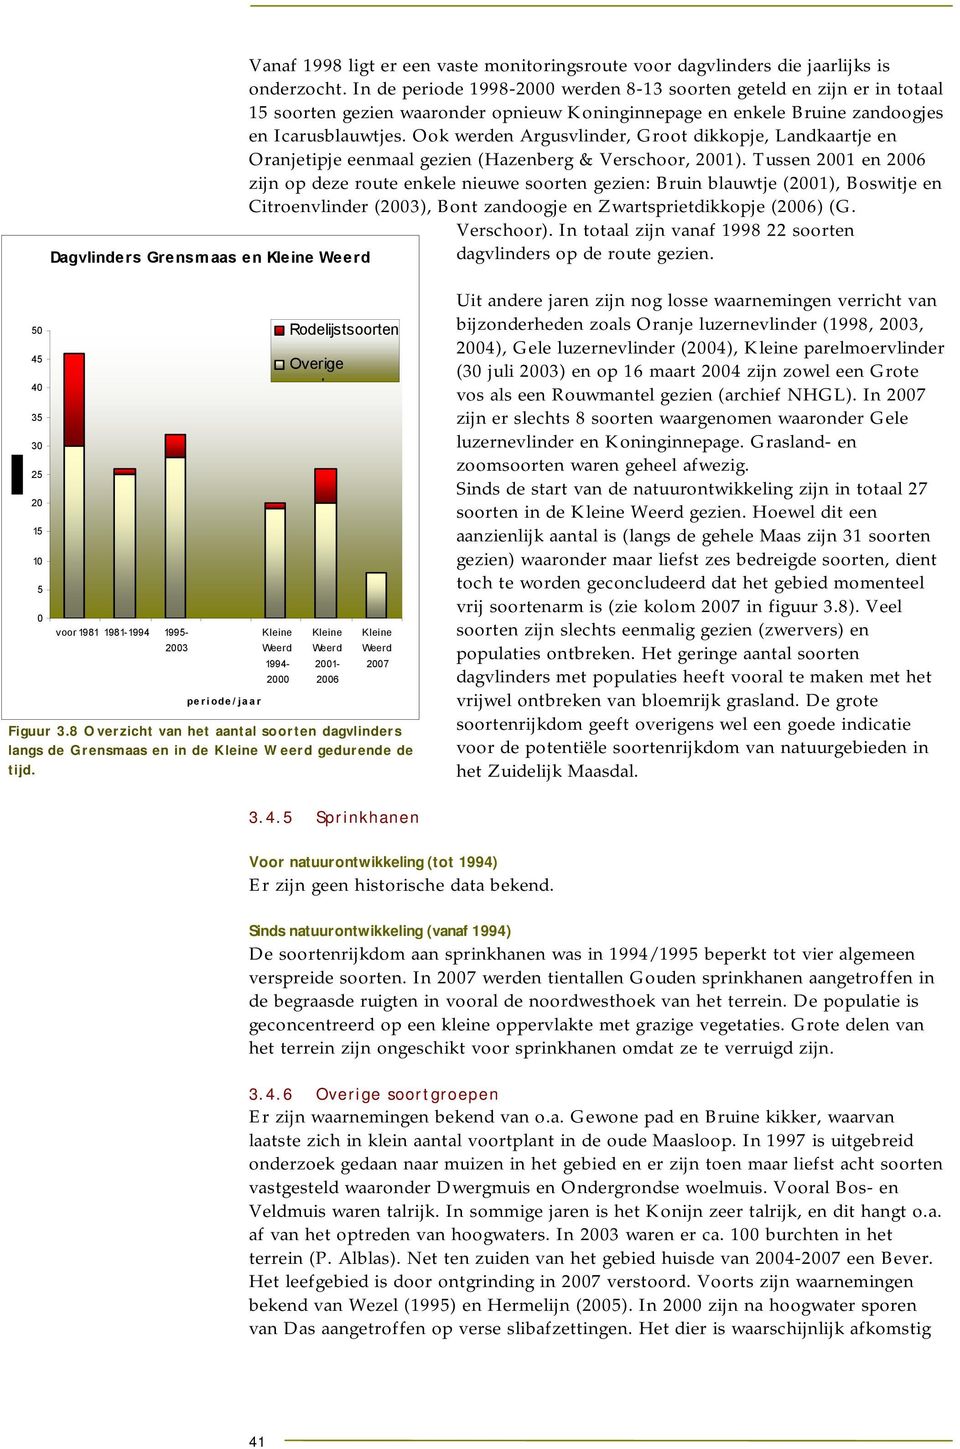 Ook werden Argusvlinder, Groot dikkopje, Landkaartje en Oranjetipje eenmaal gezien (Hazenberg & Verschoor, 2001).